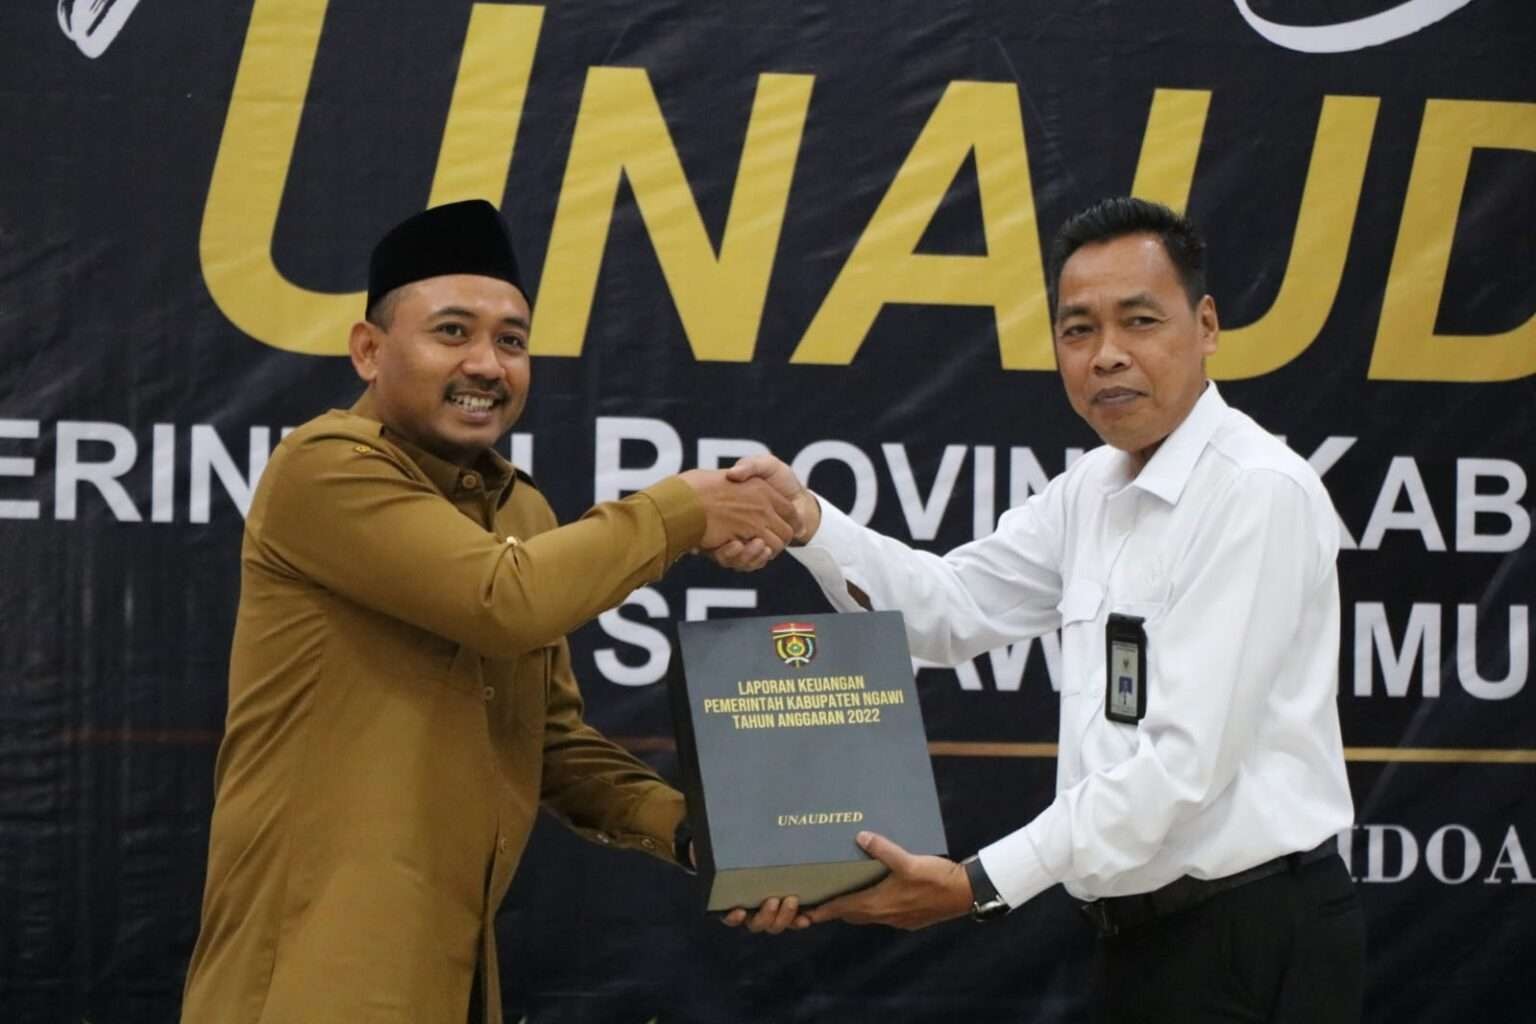 Bupati Ngawi Ony Anwar menyerahkan Laporan Keuangan Pemerintah Daerah (LKPD) Unaudited Tahun 2022 kepada BPK Jatim di Ruang Auditorium BPK Jatim, Senin 27 Maret 2023. (Foto: Instagram @masonyanwar)